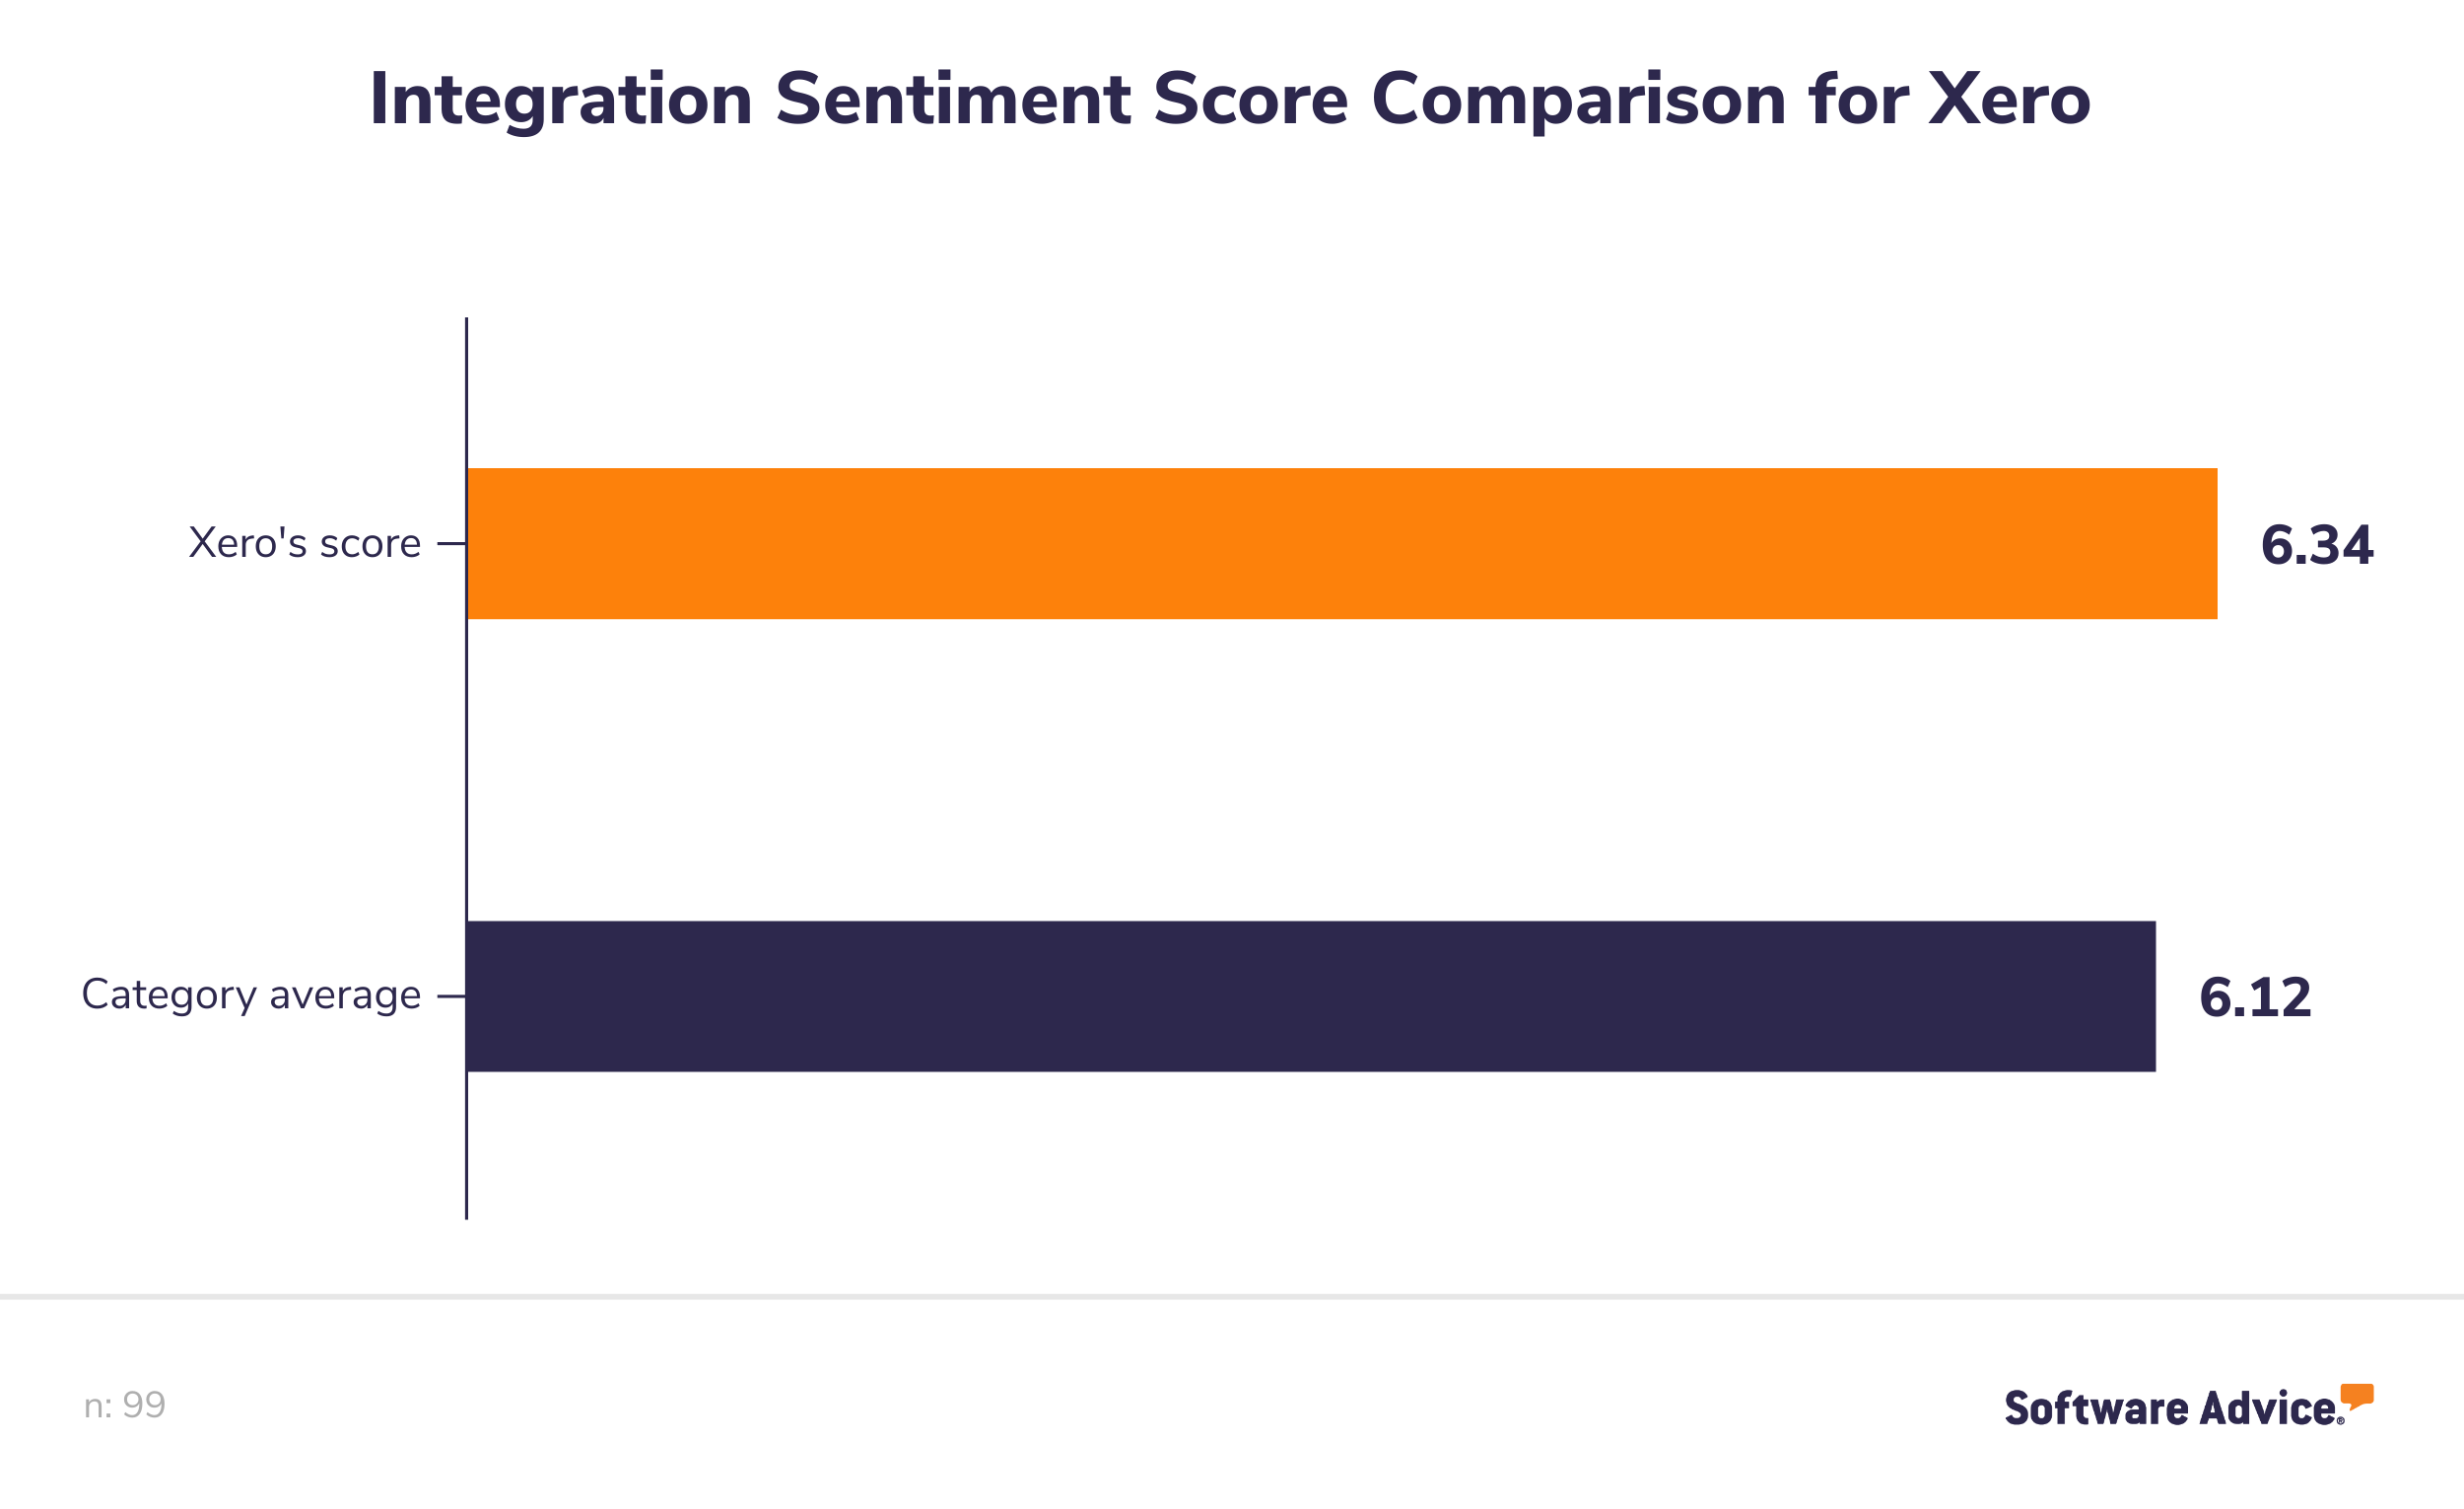 Xero's-sentiment-score-for-integration-function